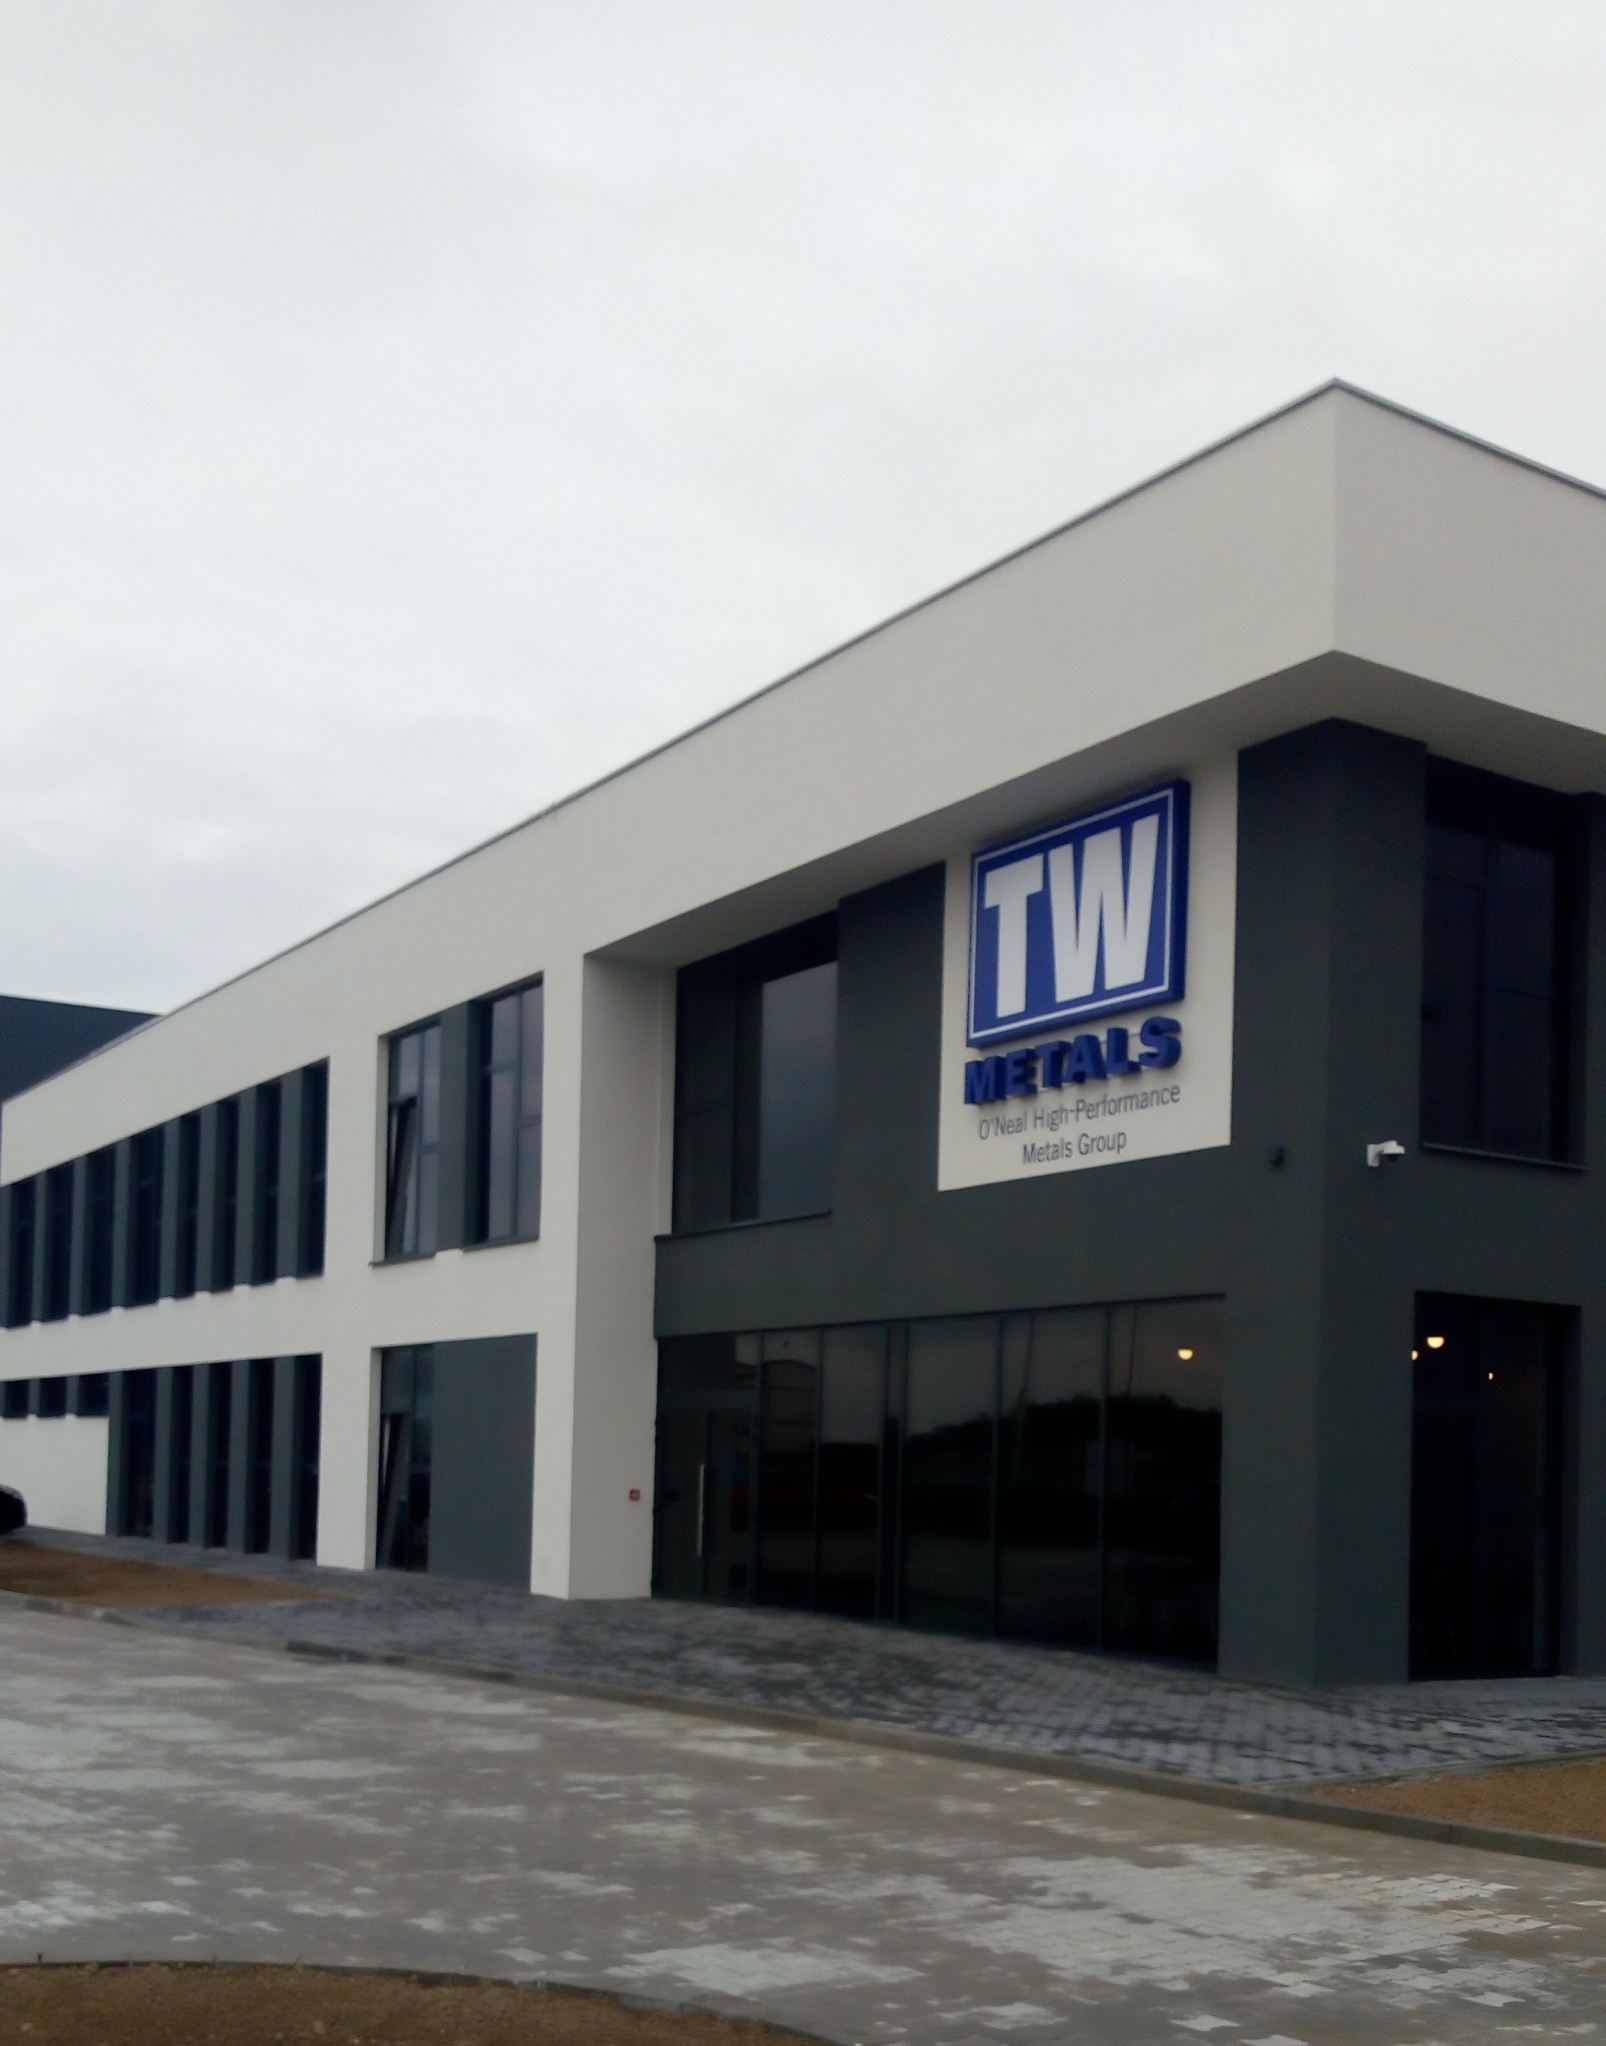 Uroczyste otwarcie zakładu TW Metals na terenie Parku Naukowo-Technologicznego "Rzeszów-Dworzysko"